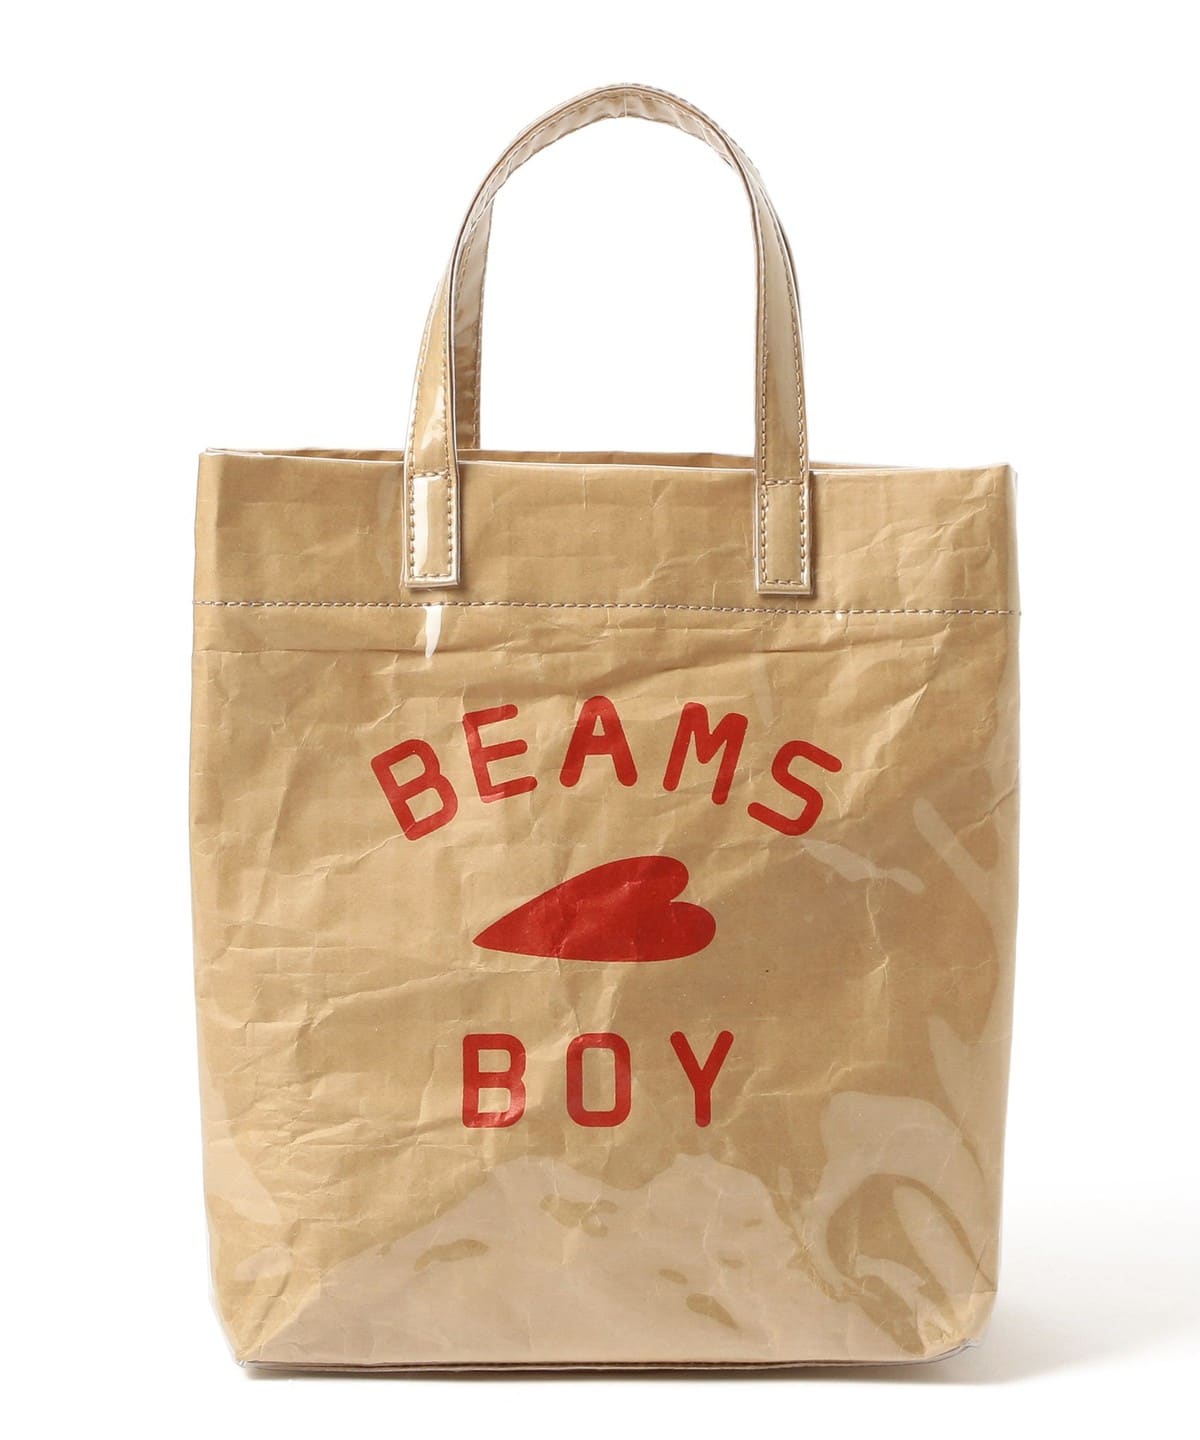 BEAMS BOY BEAMS BOY BEAMS BOY / BB logo shop bag (bag tote bag